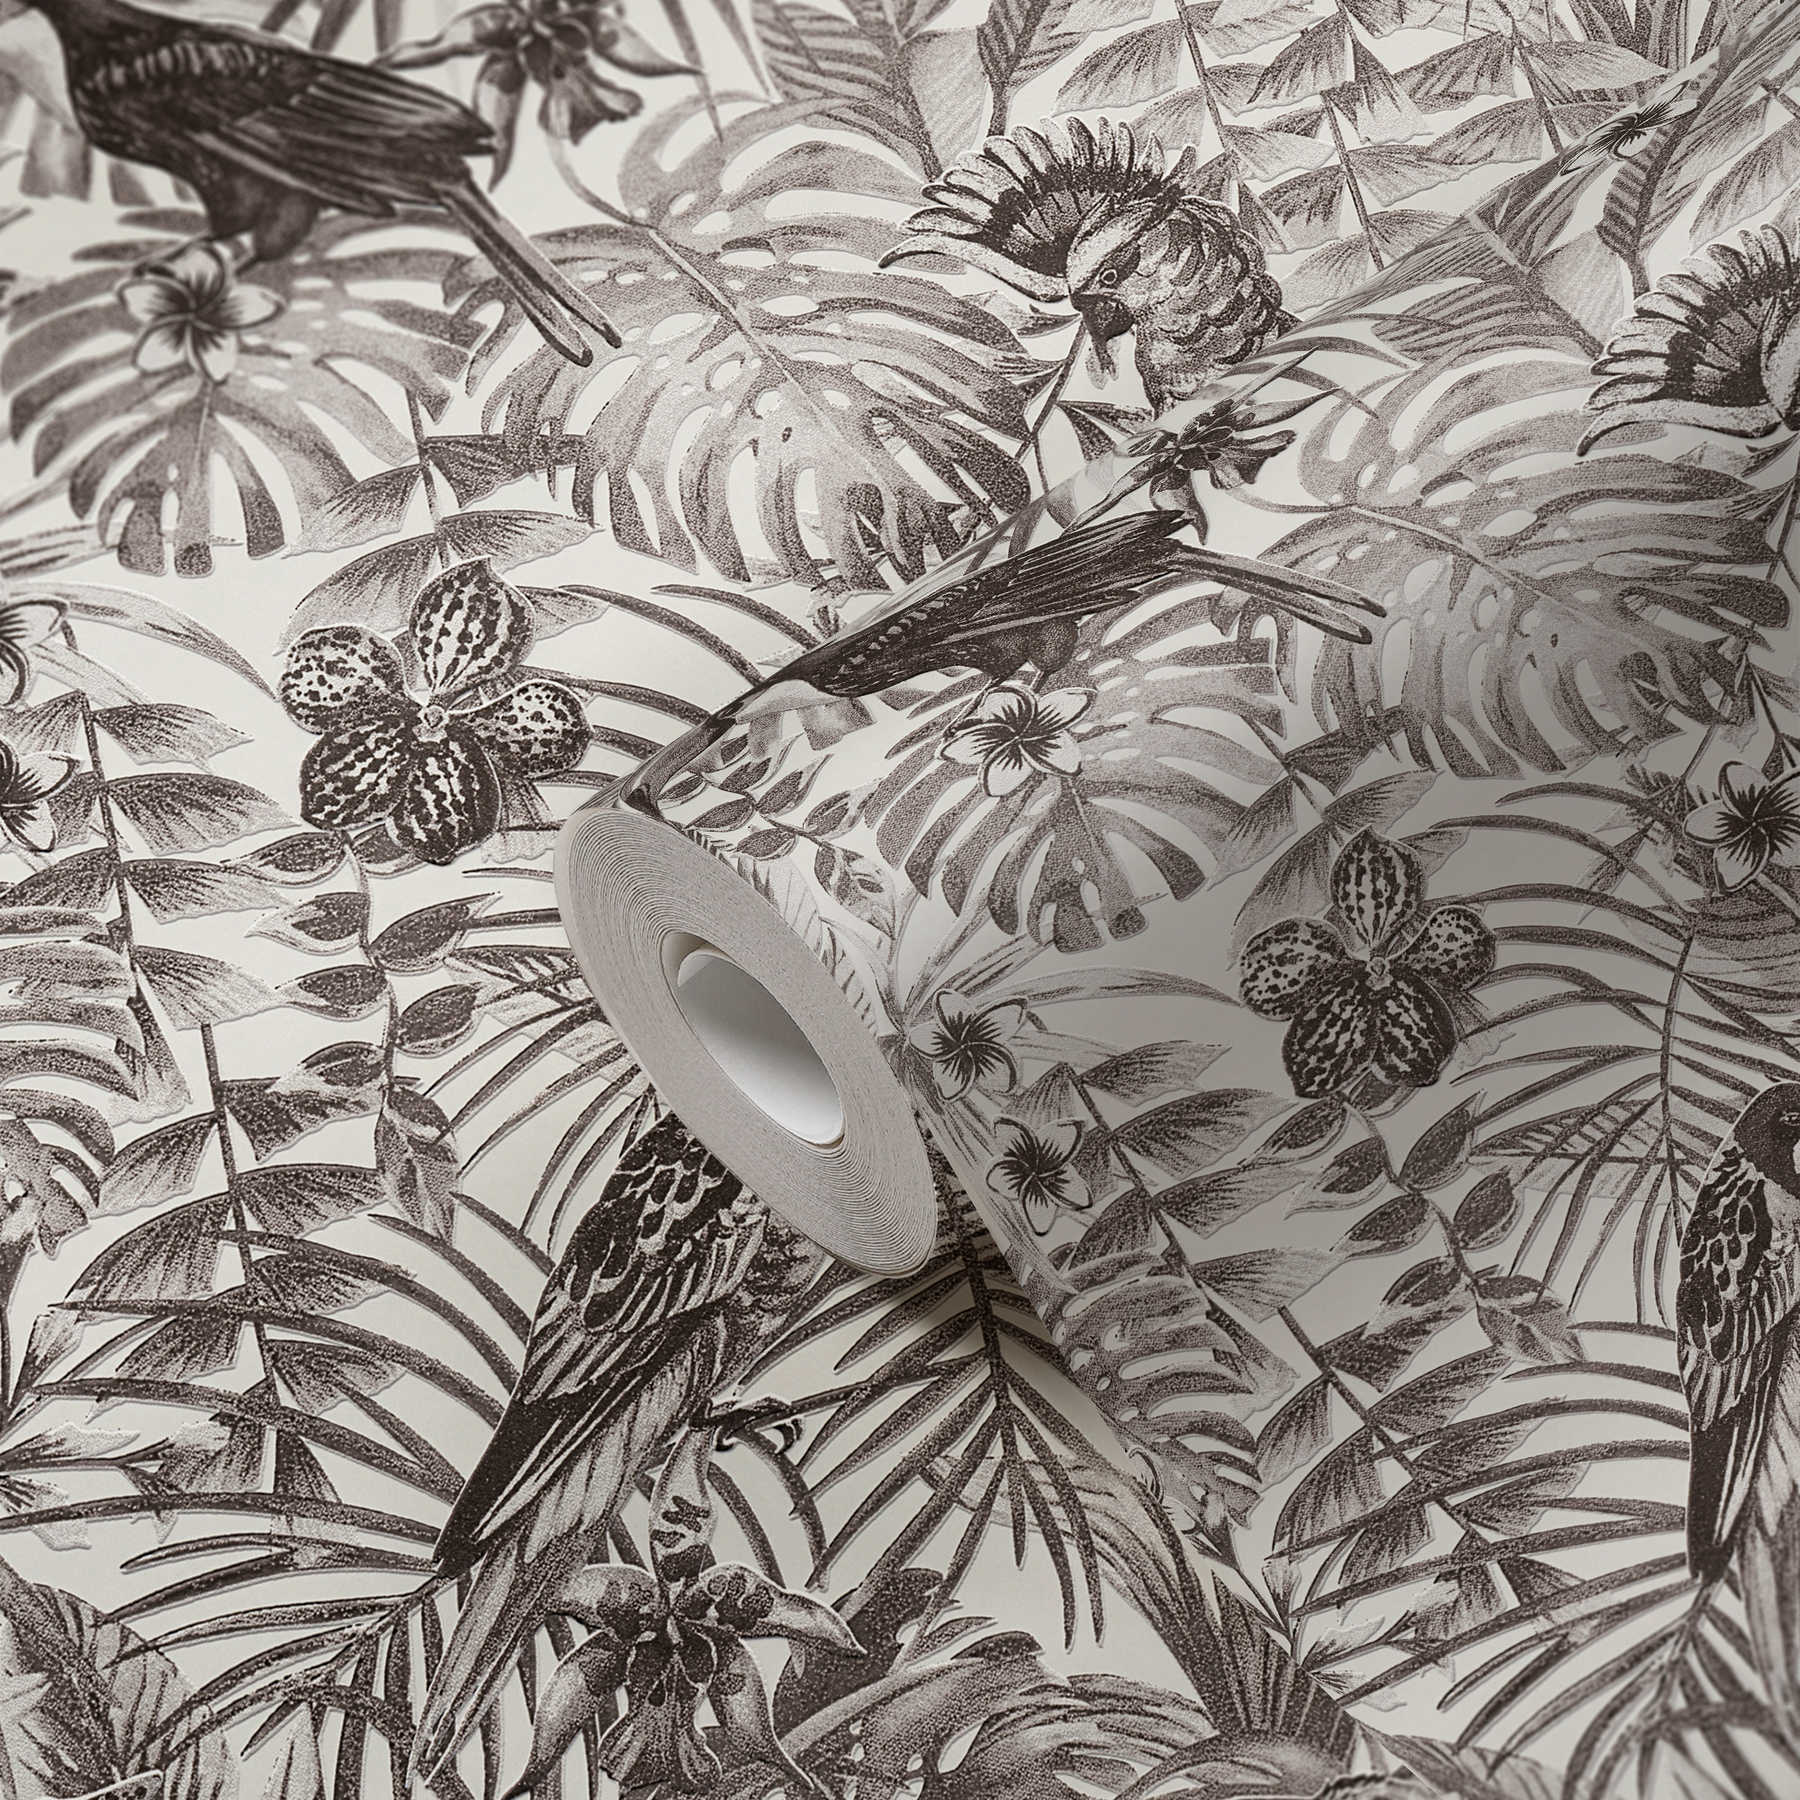             Papel pintado exótico pájaros, flores y hojas tropicales - negro, blanco, gris
        